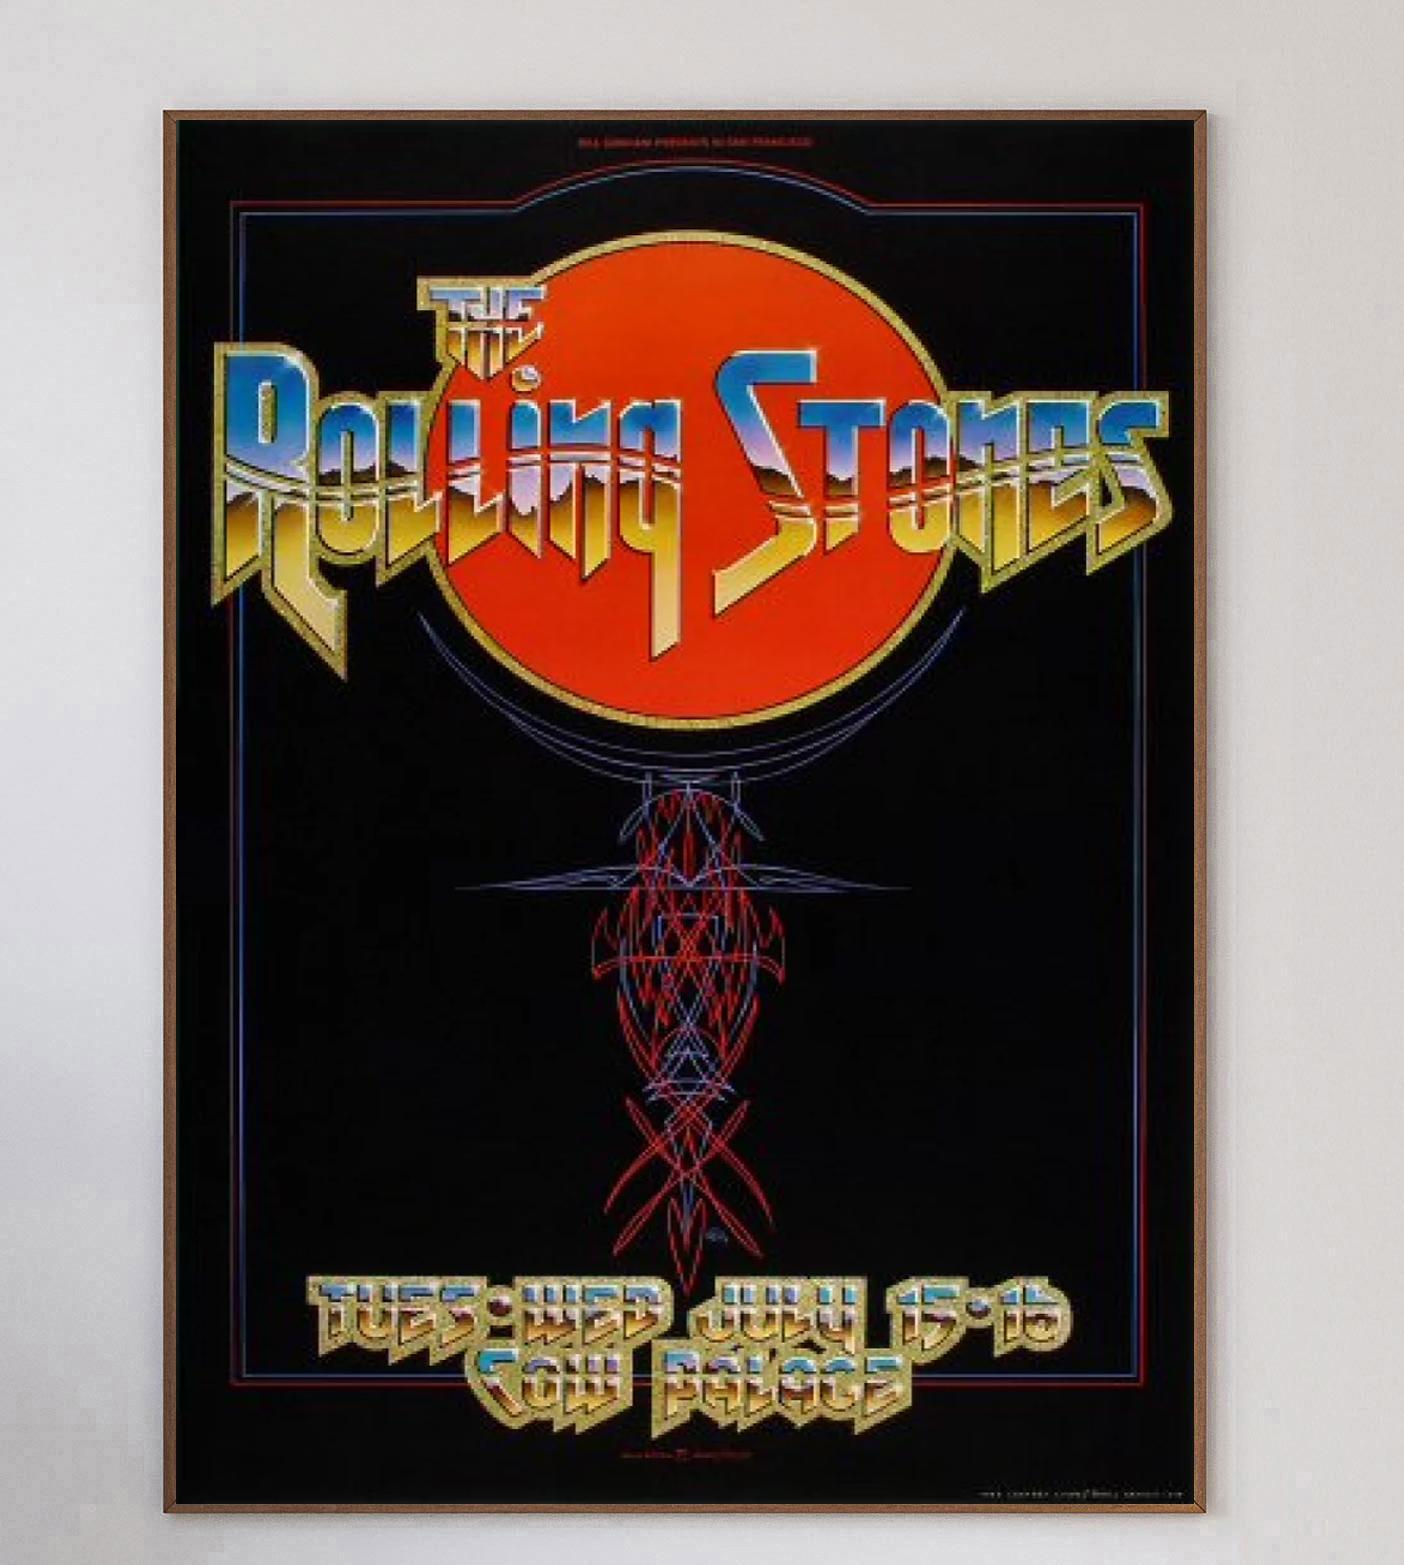 Wunderschönes Plakat von den Konzerten der Rolling Stones im legendären Cow Palace in Kalifornien, USA. Das von Bill Graham präsentierte Konzert fand am 15. und 16. Juli statt und war Teil der 